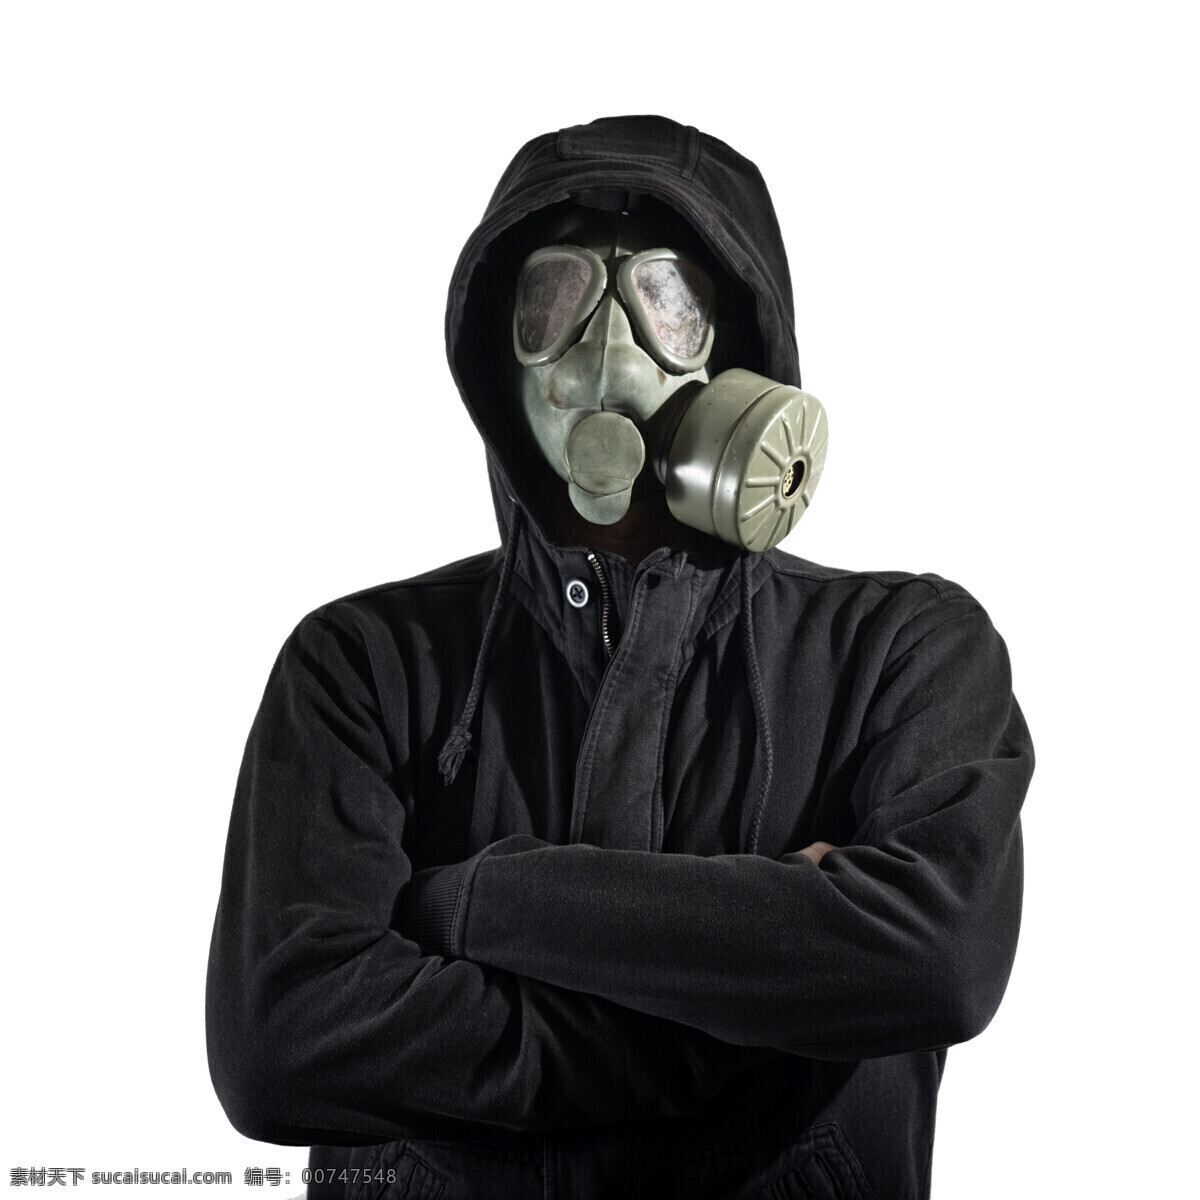 戴 防毒 面罩 男人 防毒面罩 防毒面具 毒气罩 环境破坏 外国男士 空气污染 商务人士 人物图片